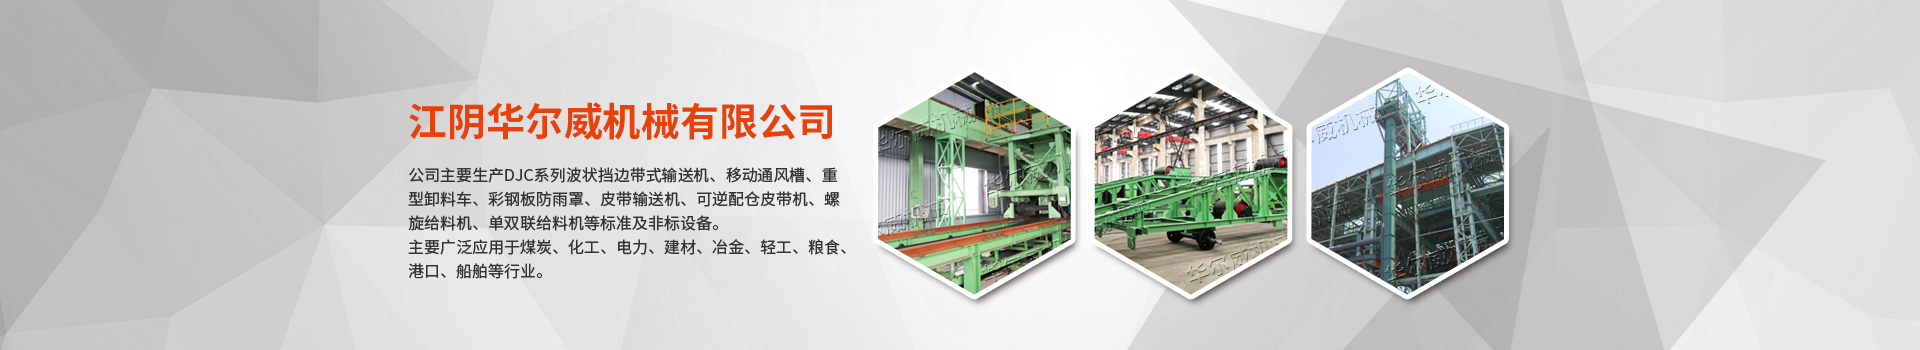 重型卸料車結構簡單 性能可靠-江陰華爾威機械有限公司